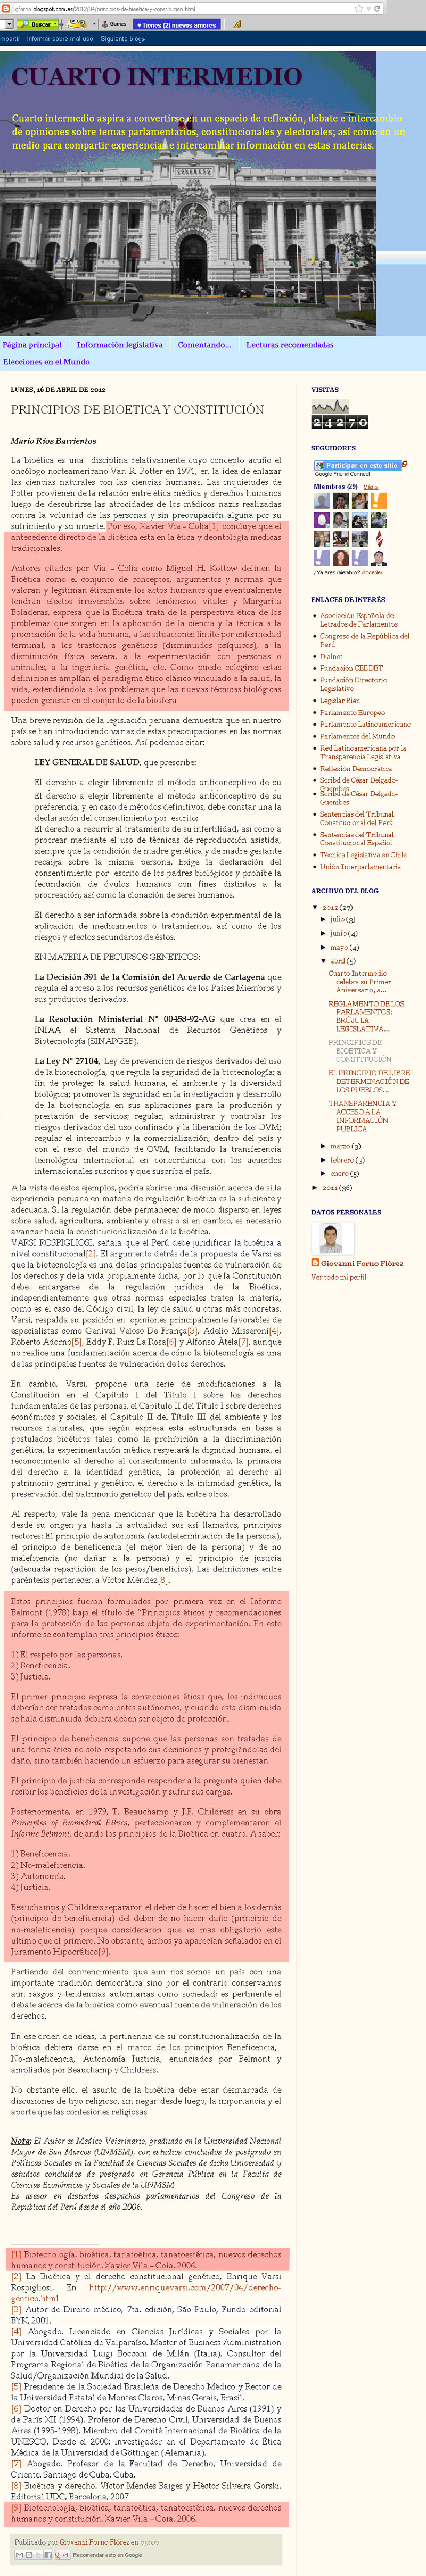 Blog “Cuarto Intermedio” (16-4-2012).